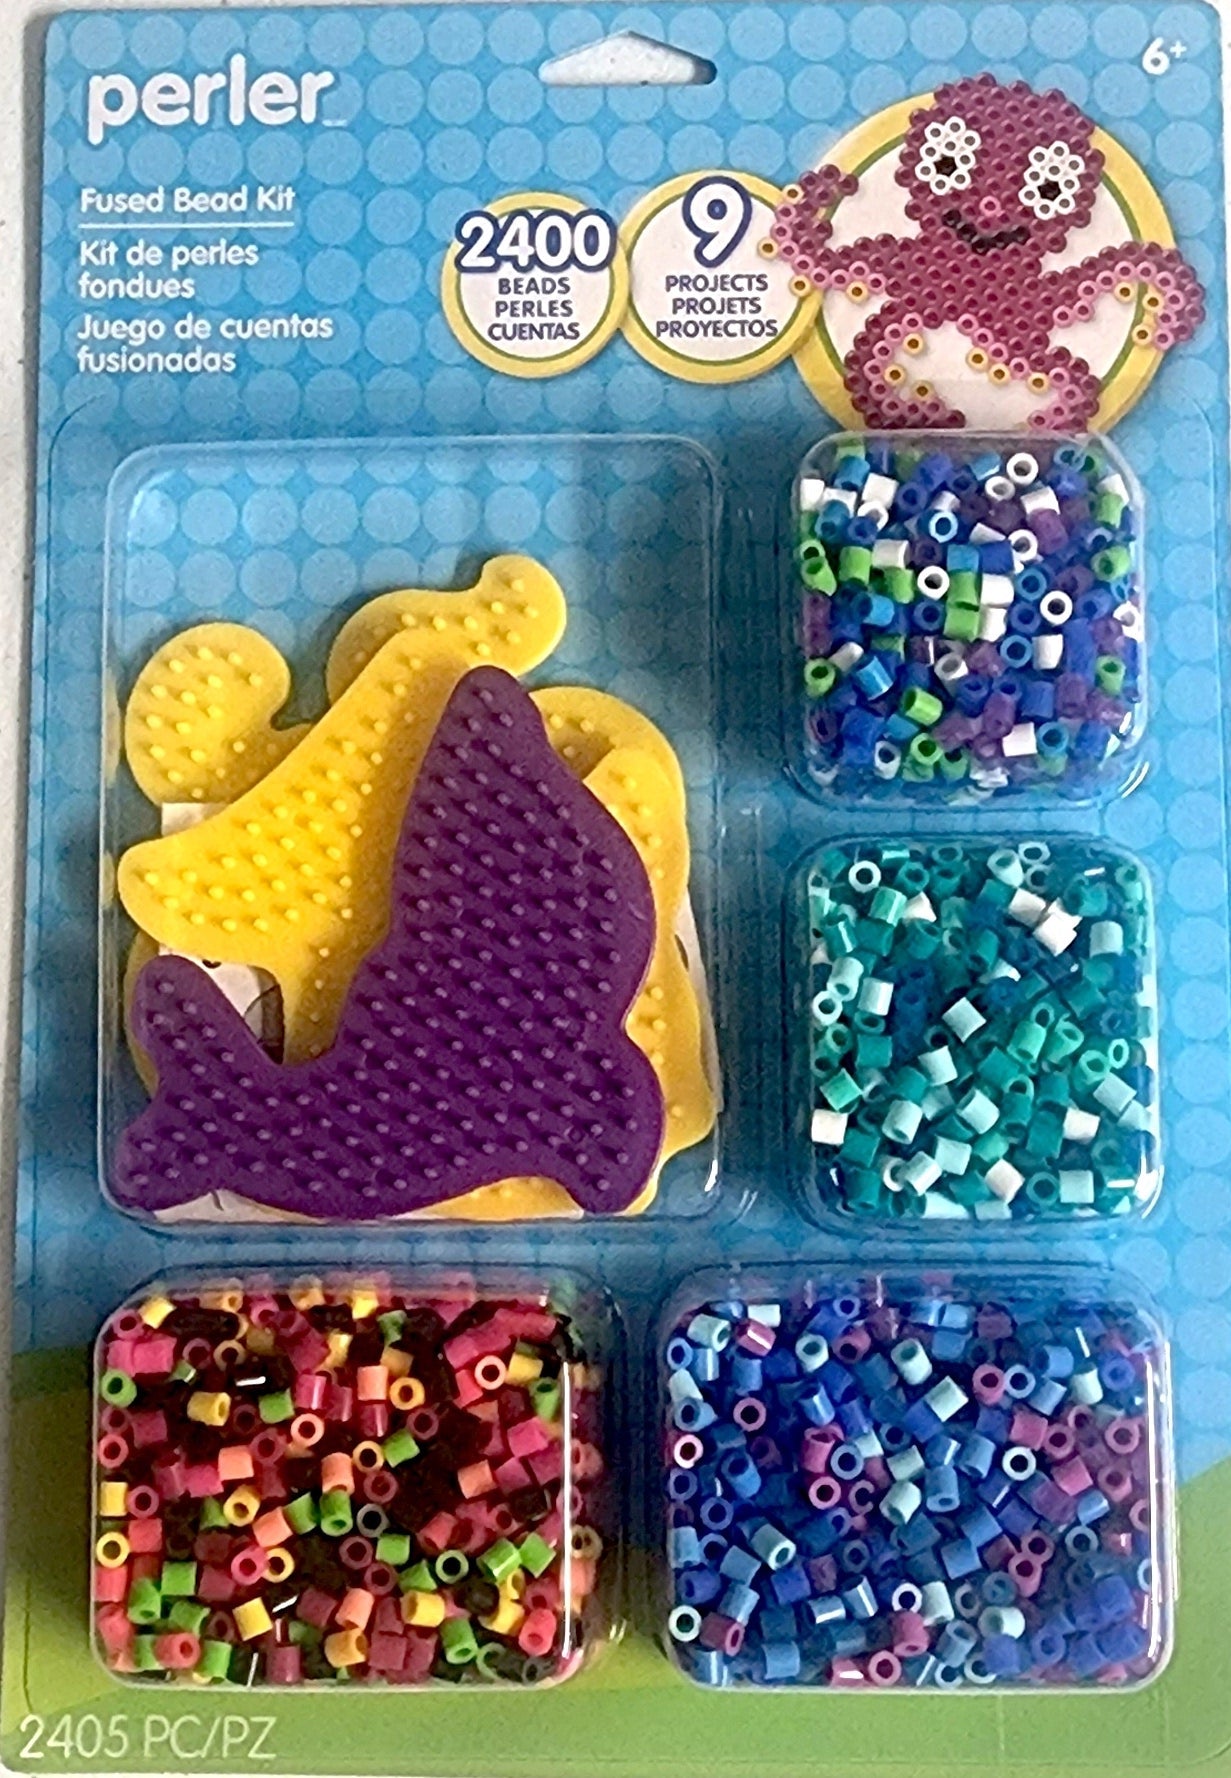 Craft 'n Stitch Ocean Animals Beach Summer Crafts Gift Box for Kids Ages  10-12 